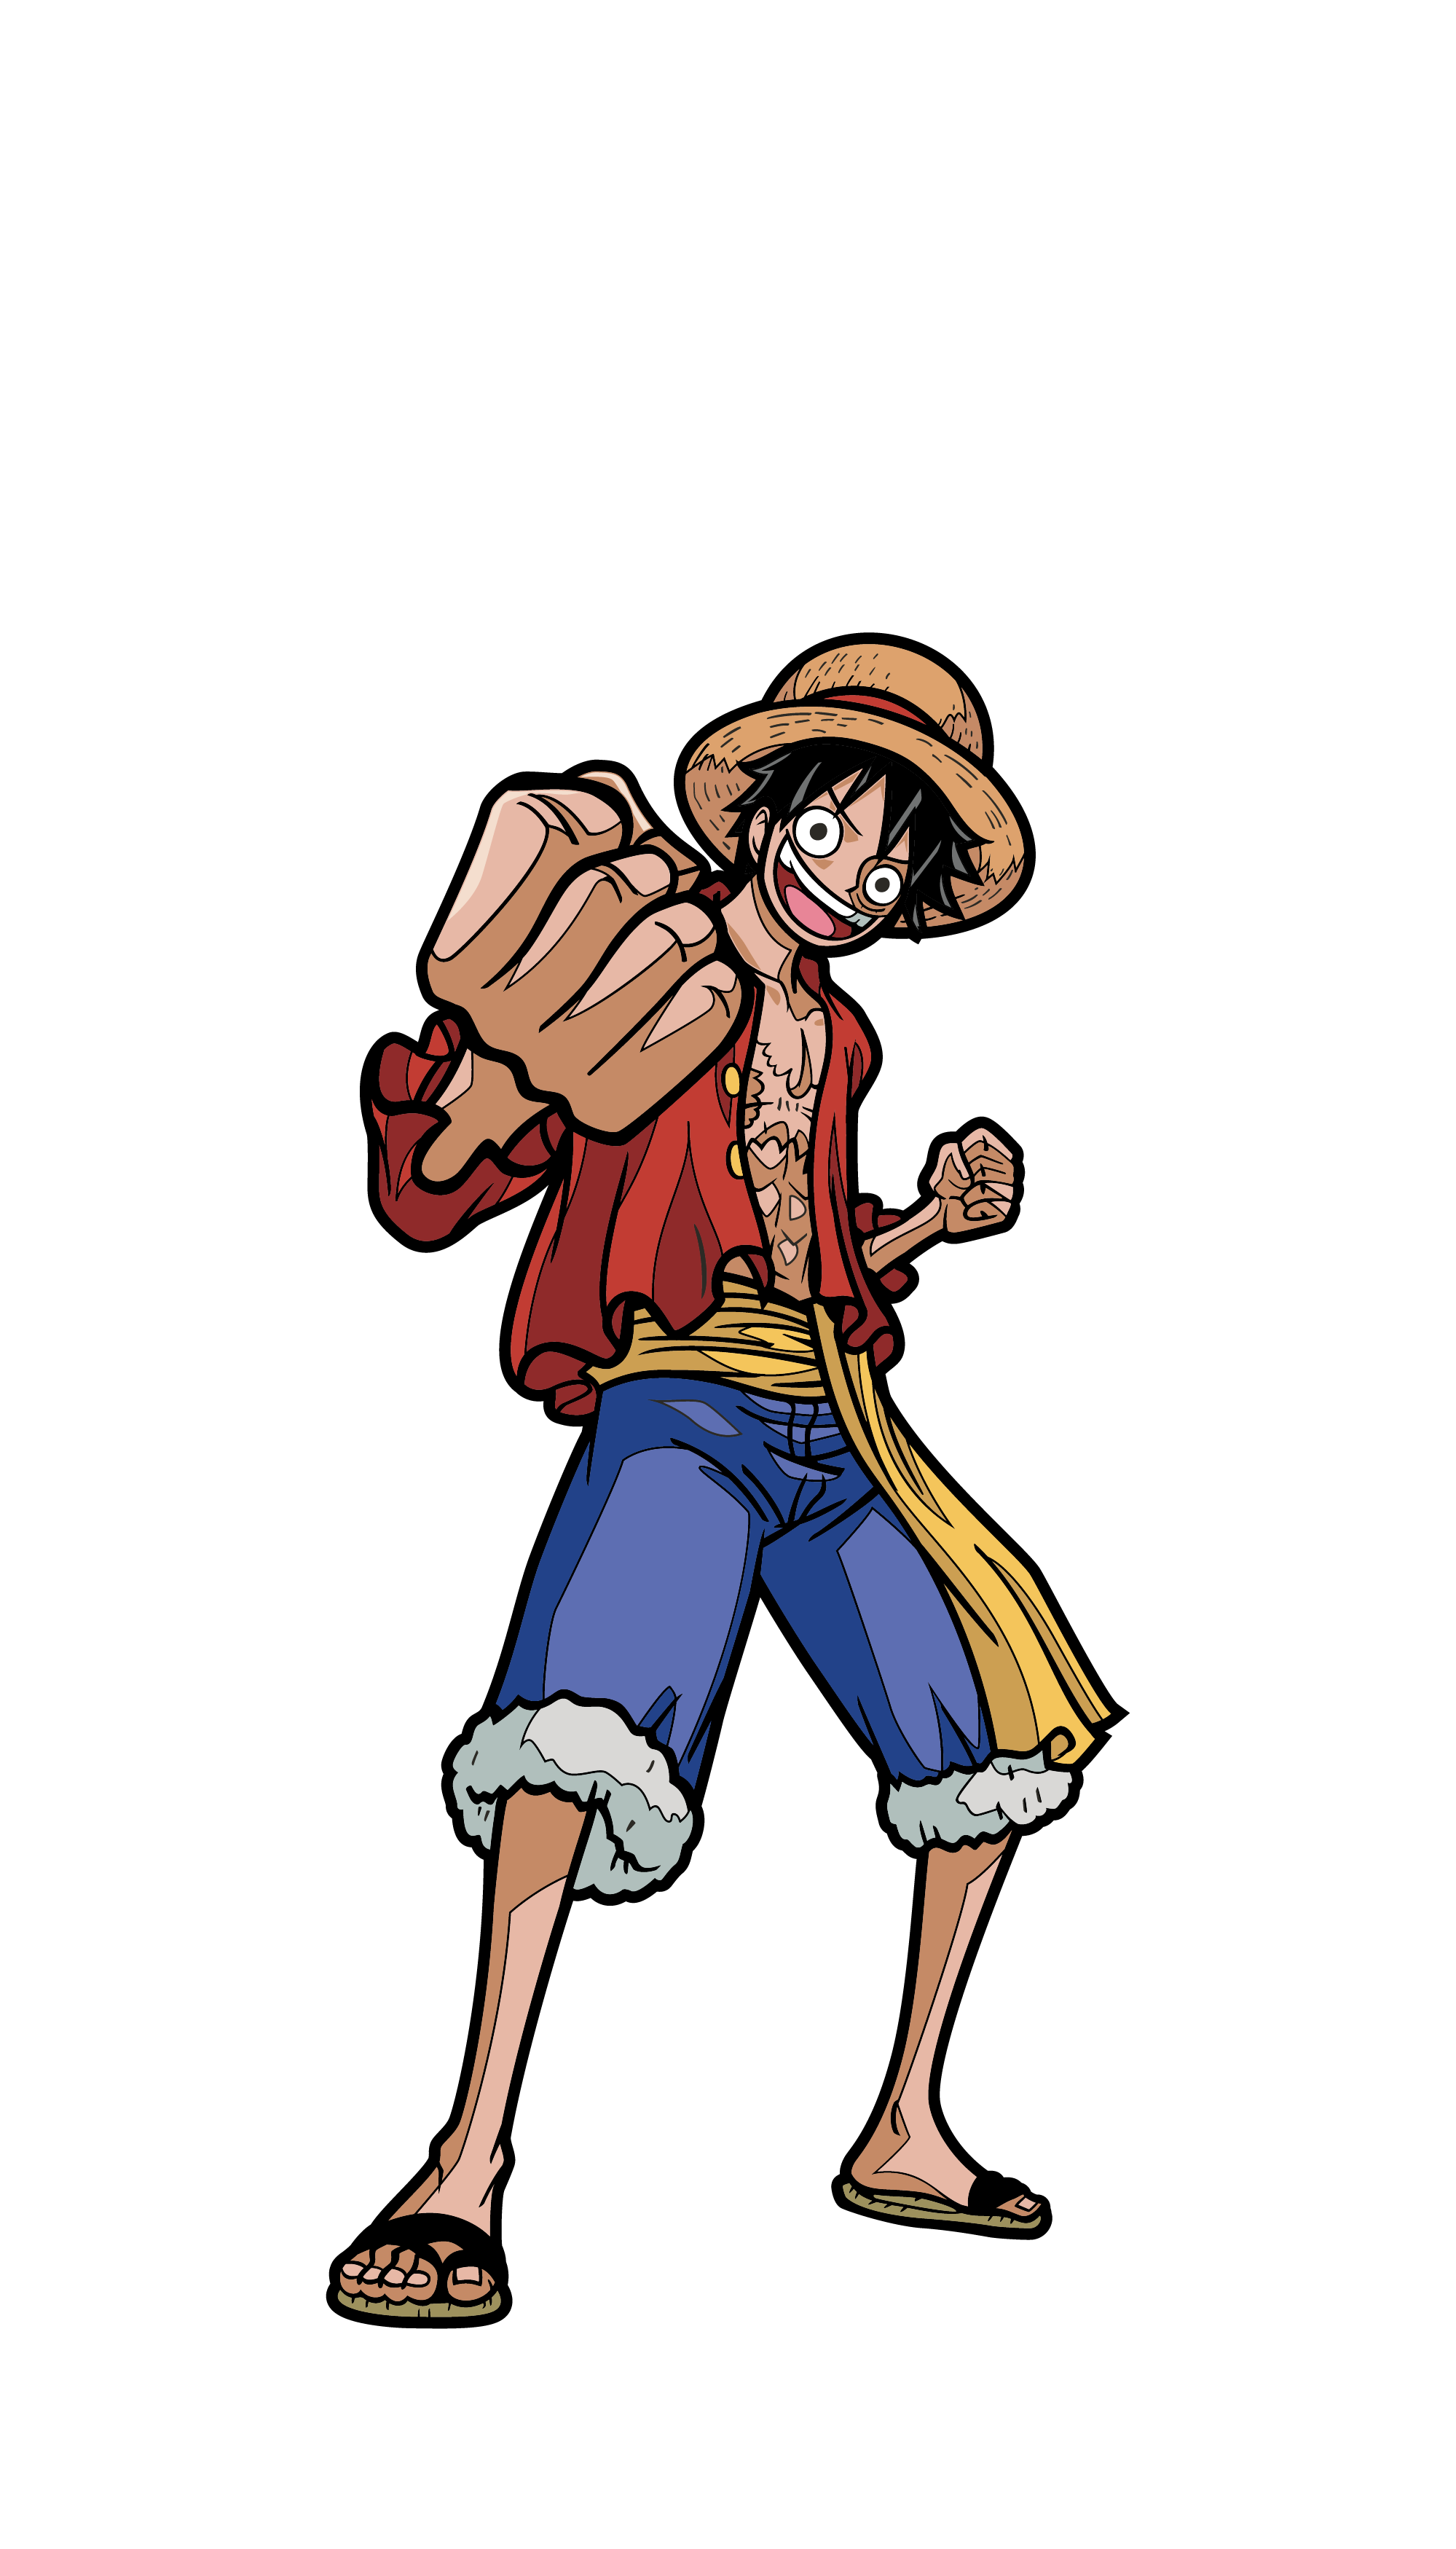 Art Render of One Piece's Monkey D. Luffy enamel pin.